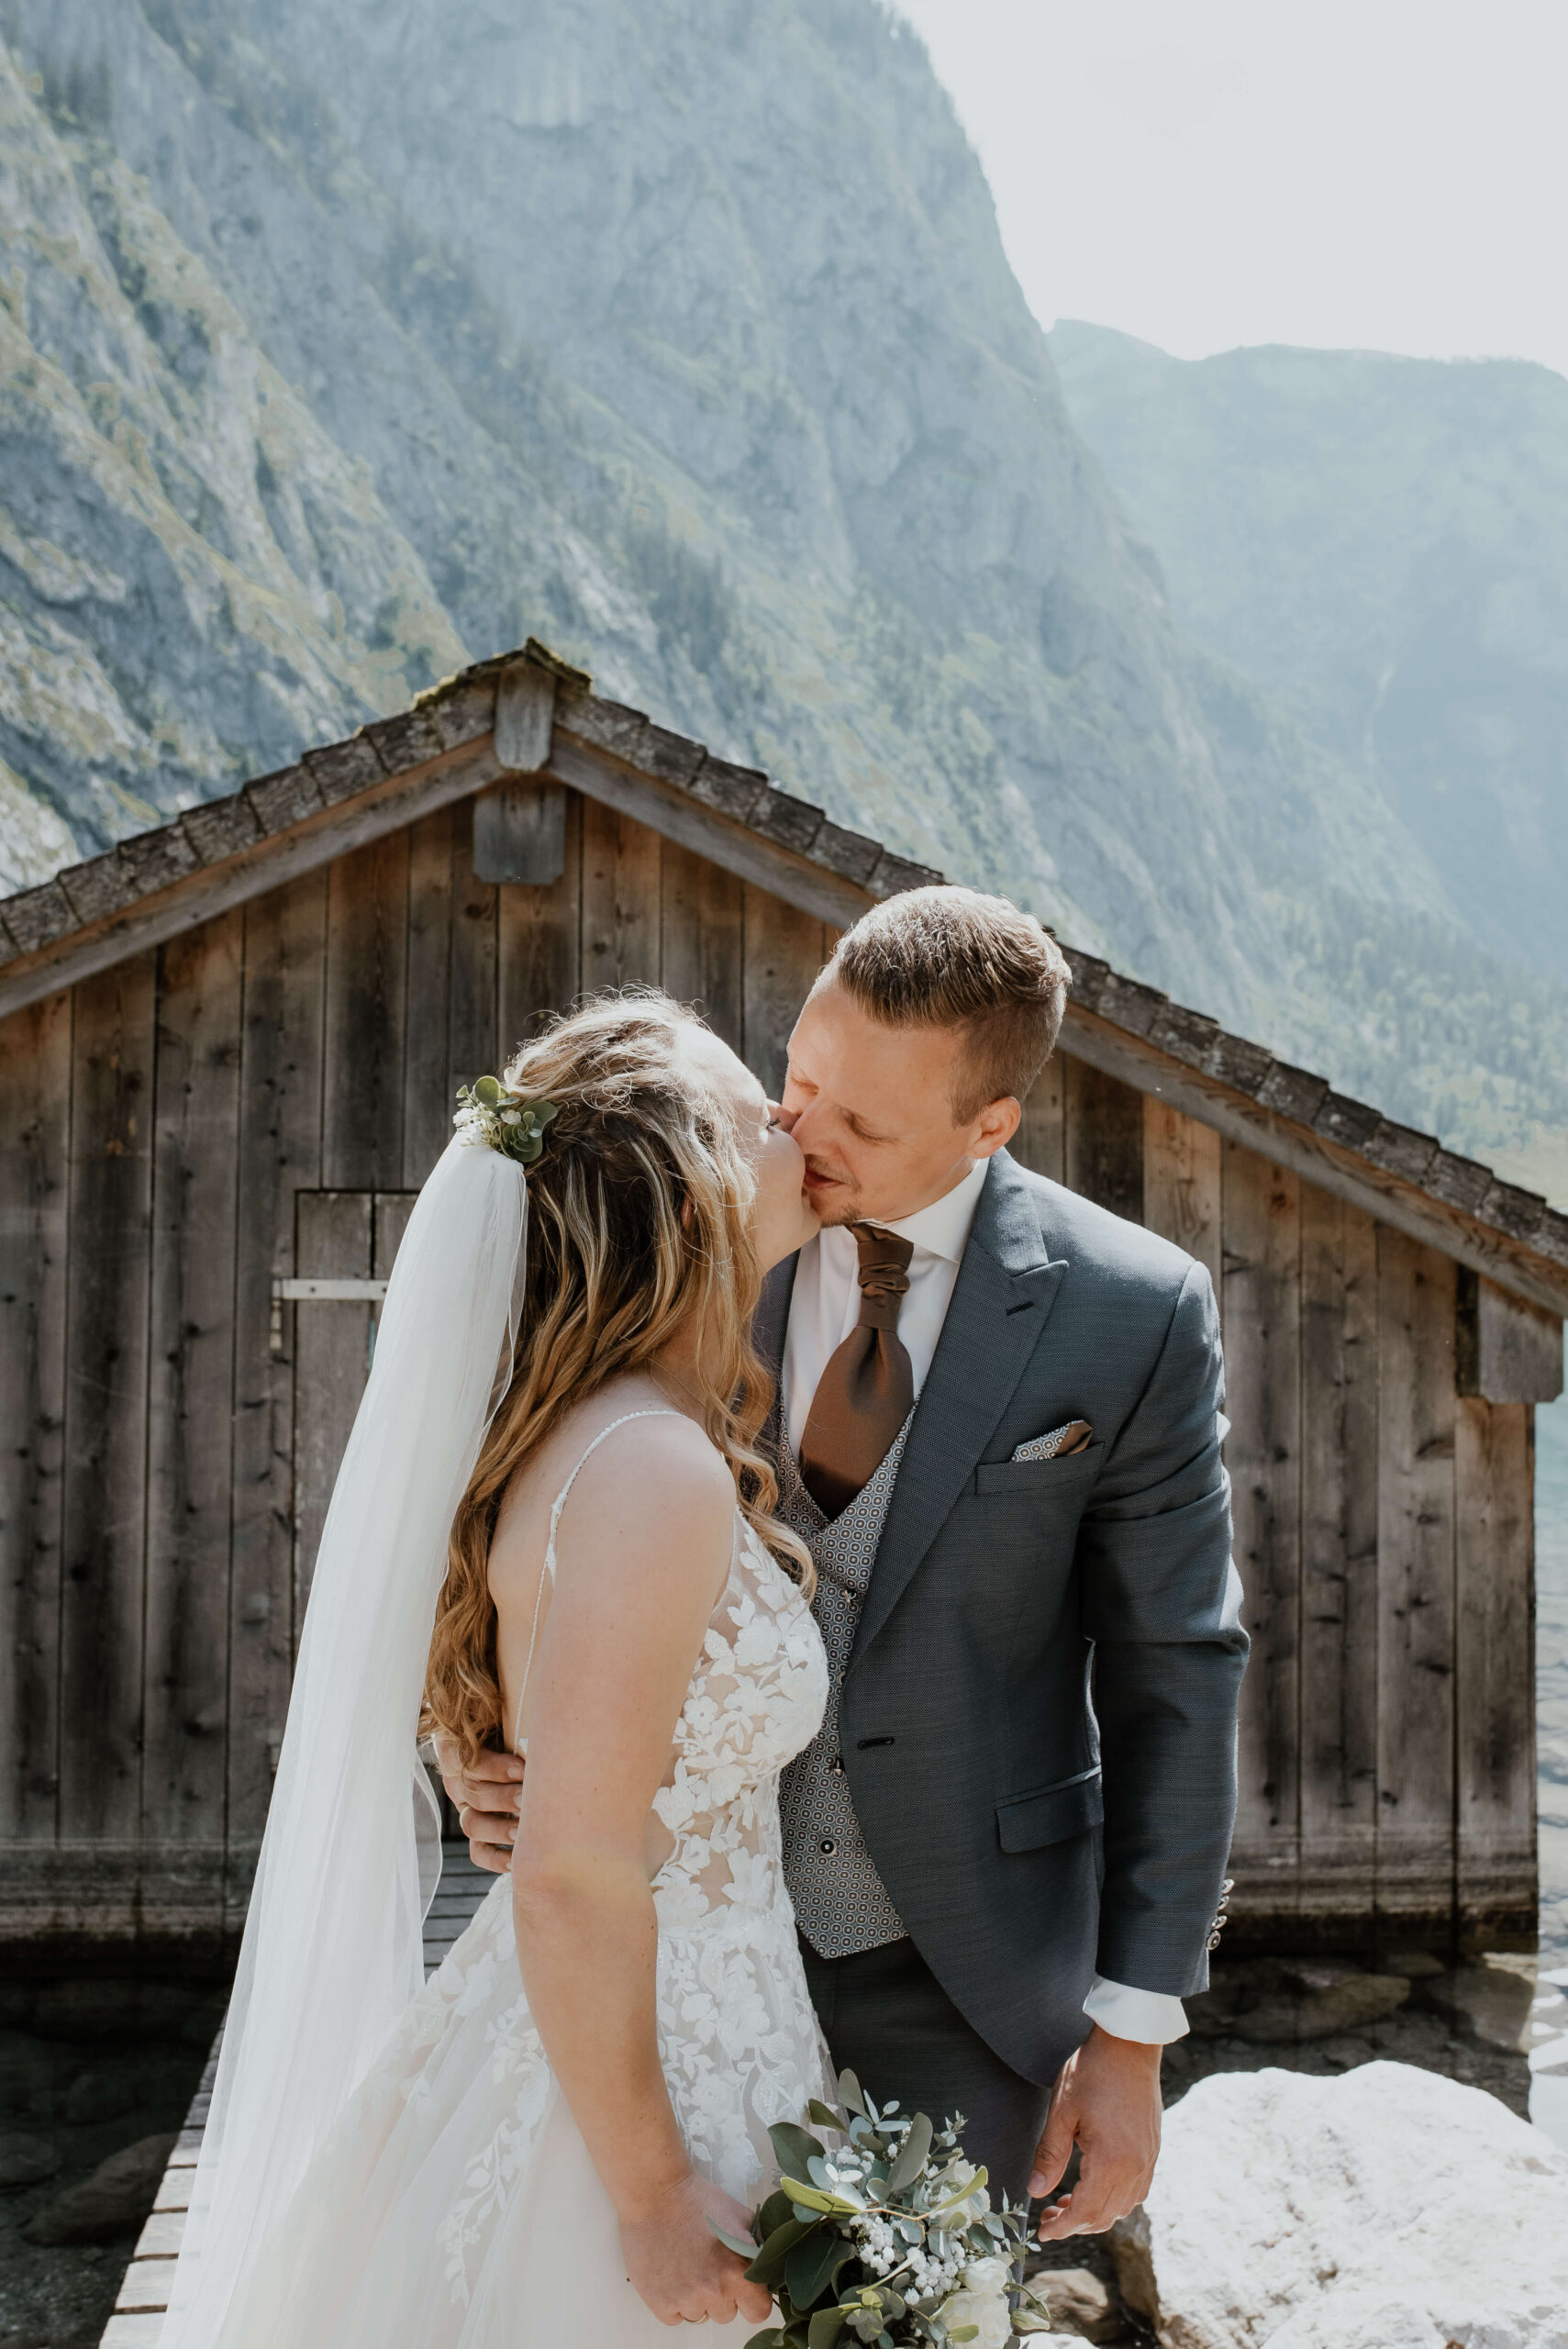 Es ist eine Hochzeit am Konigsee, an einem heißen Tag im Mai. Die Braut trägt ihr Hochzeitskleid und küsst den Bräutigam. Beide stehen auf einer Holzbrücke und im Hintergrund sieht man eine Holzhütte und Berge. Der Hochzeitsfotograf Konigsee hält diesen besonderen Moment fest.